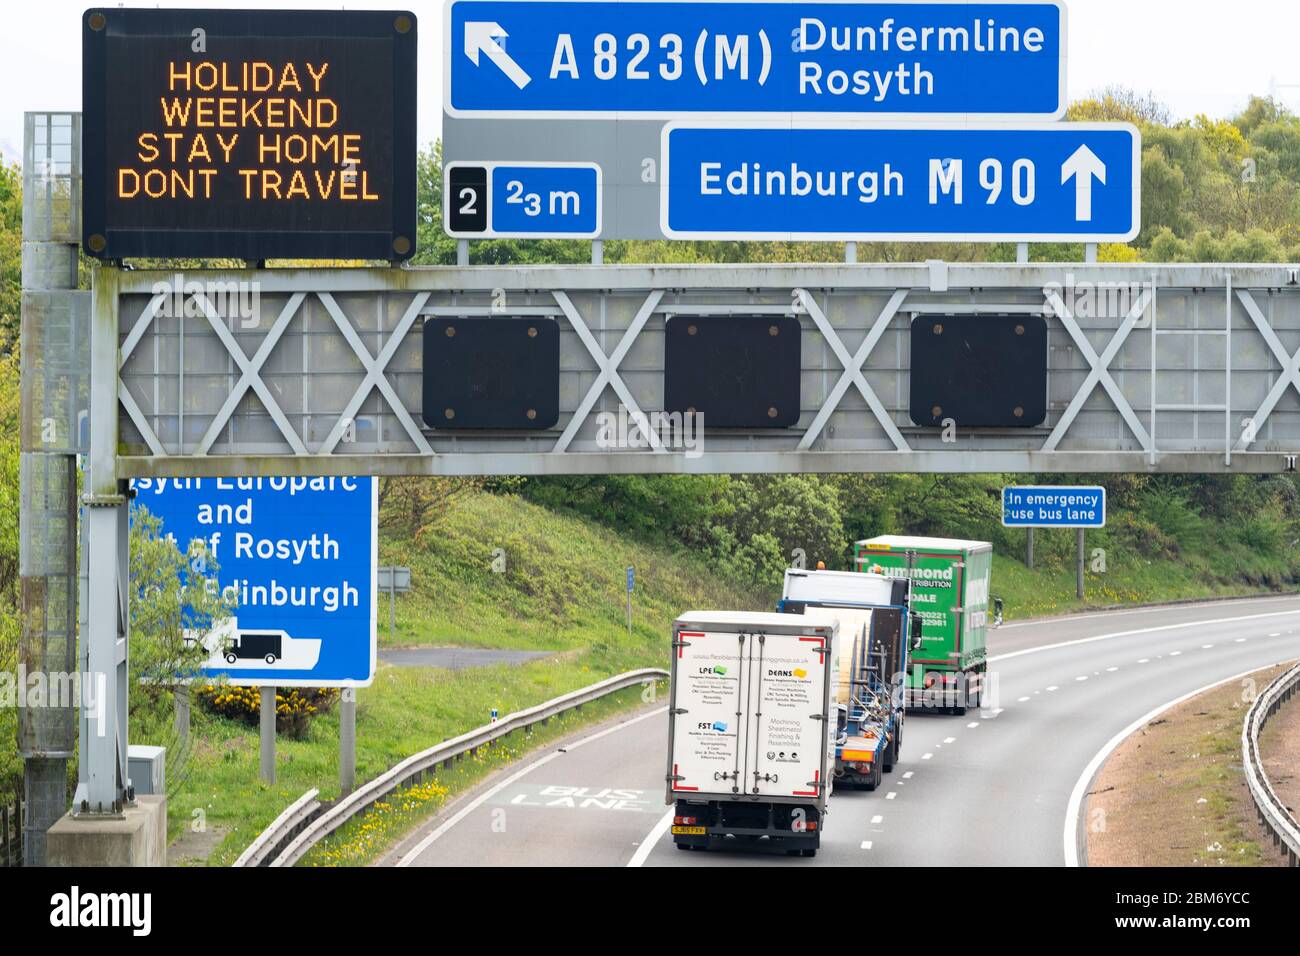 Dunfermline, Escocia, Reino Unido. 7 de mayo de 2020. El tráfico de la tarde en la M90 en Fife es notablemente más pesado de lo normal durante el bloqueo del coronavirus. Señal de advertencia que indica a los conductores que se quedan en casa durante el fin de semana de vacaciones. Iain Masterton/ Alamy Live News. Foto de stock